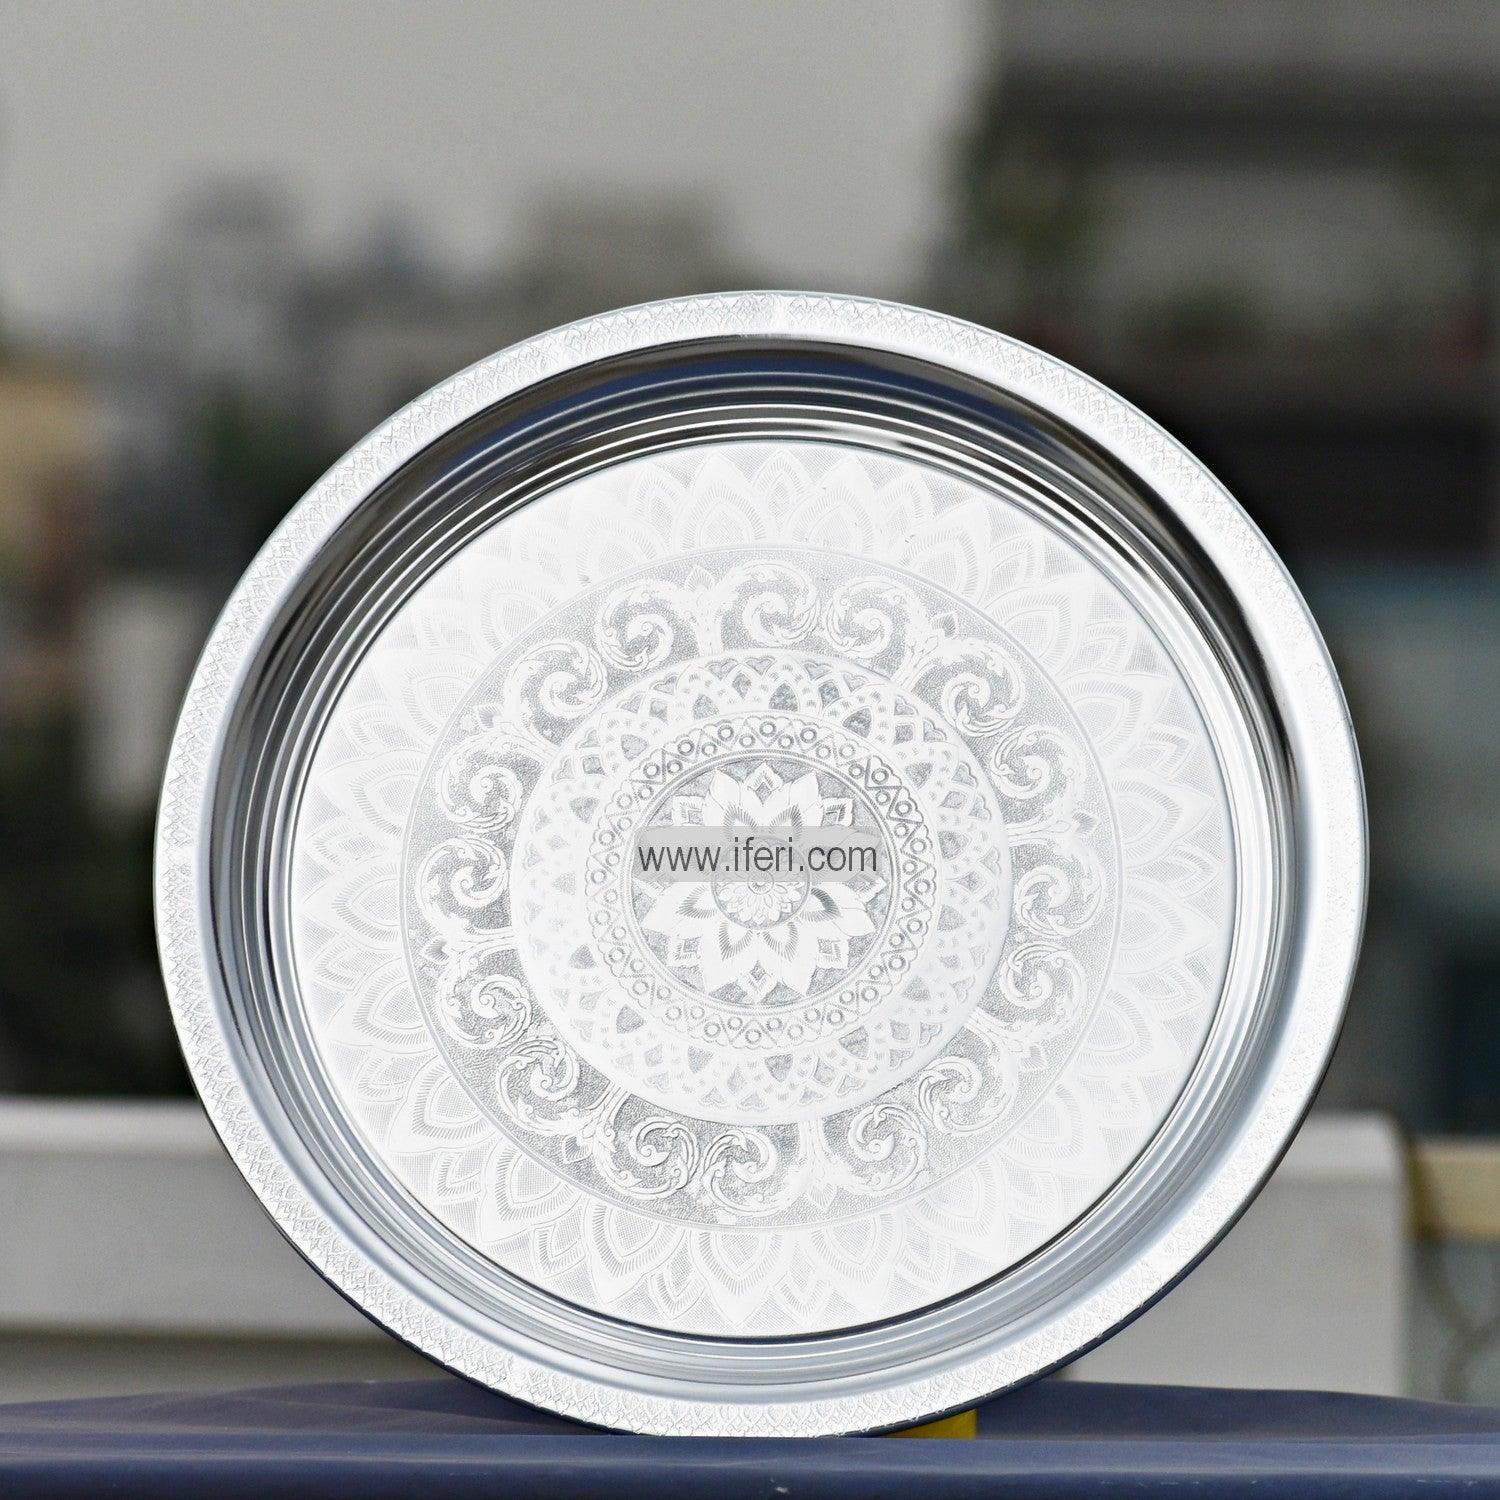 40cm Vintage Aluminum Food Plate/Thali UT4121 Price in Bangladesh - iferi.com